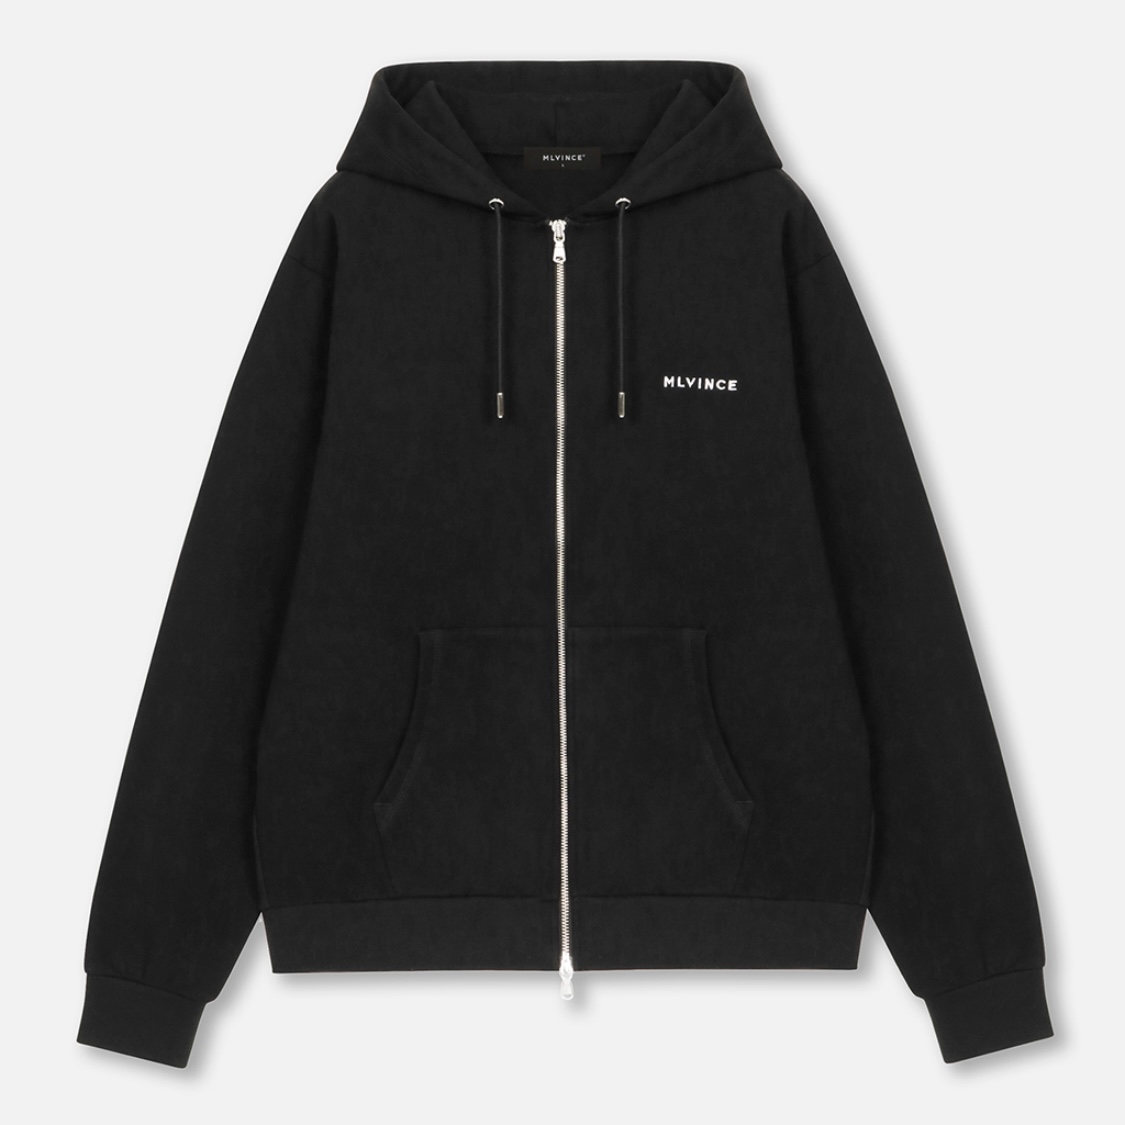 MLVINCE®︎ / classic logo zip up hoodie - OTHELLO KUMAMOTO